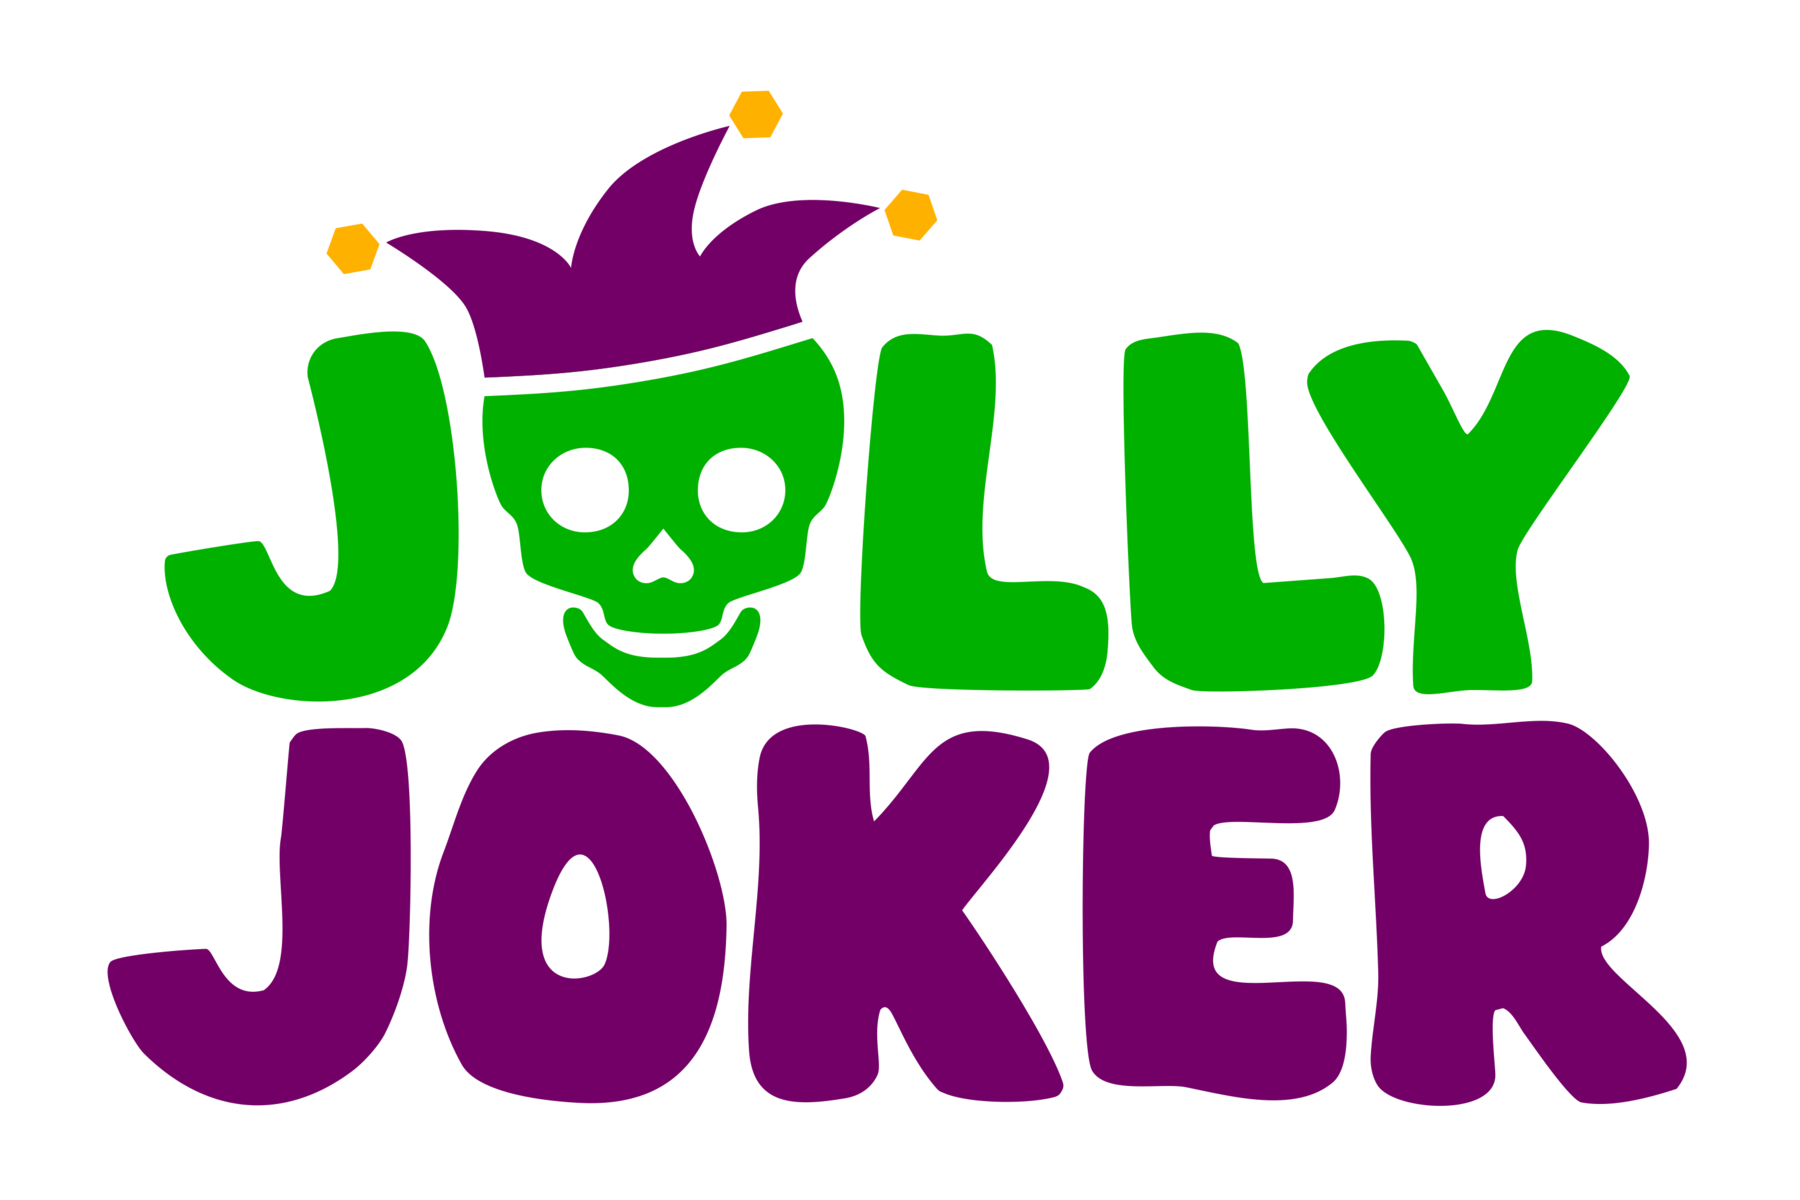 www.jollyjokercafe.it